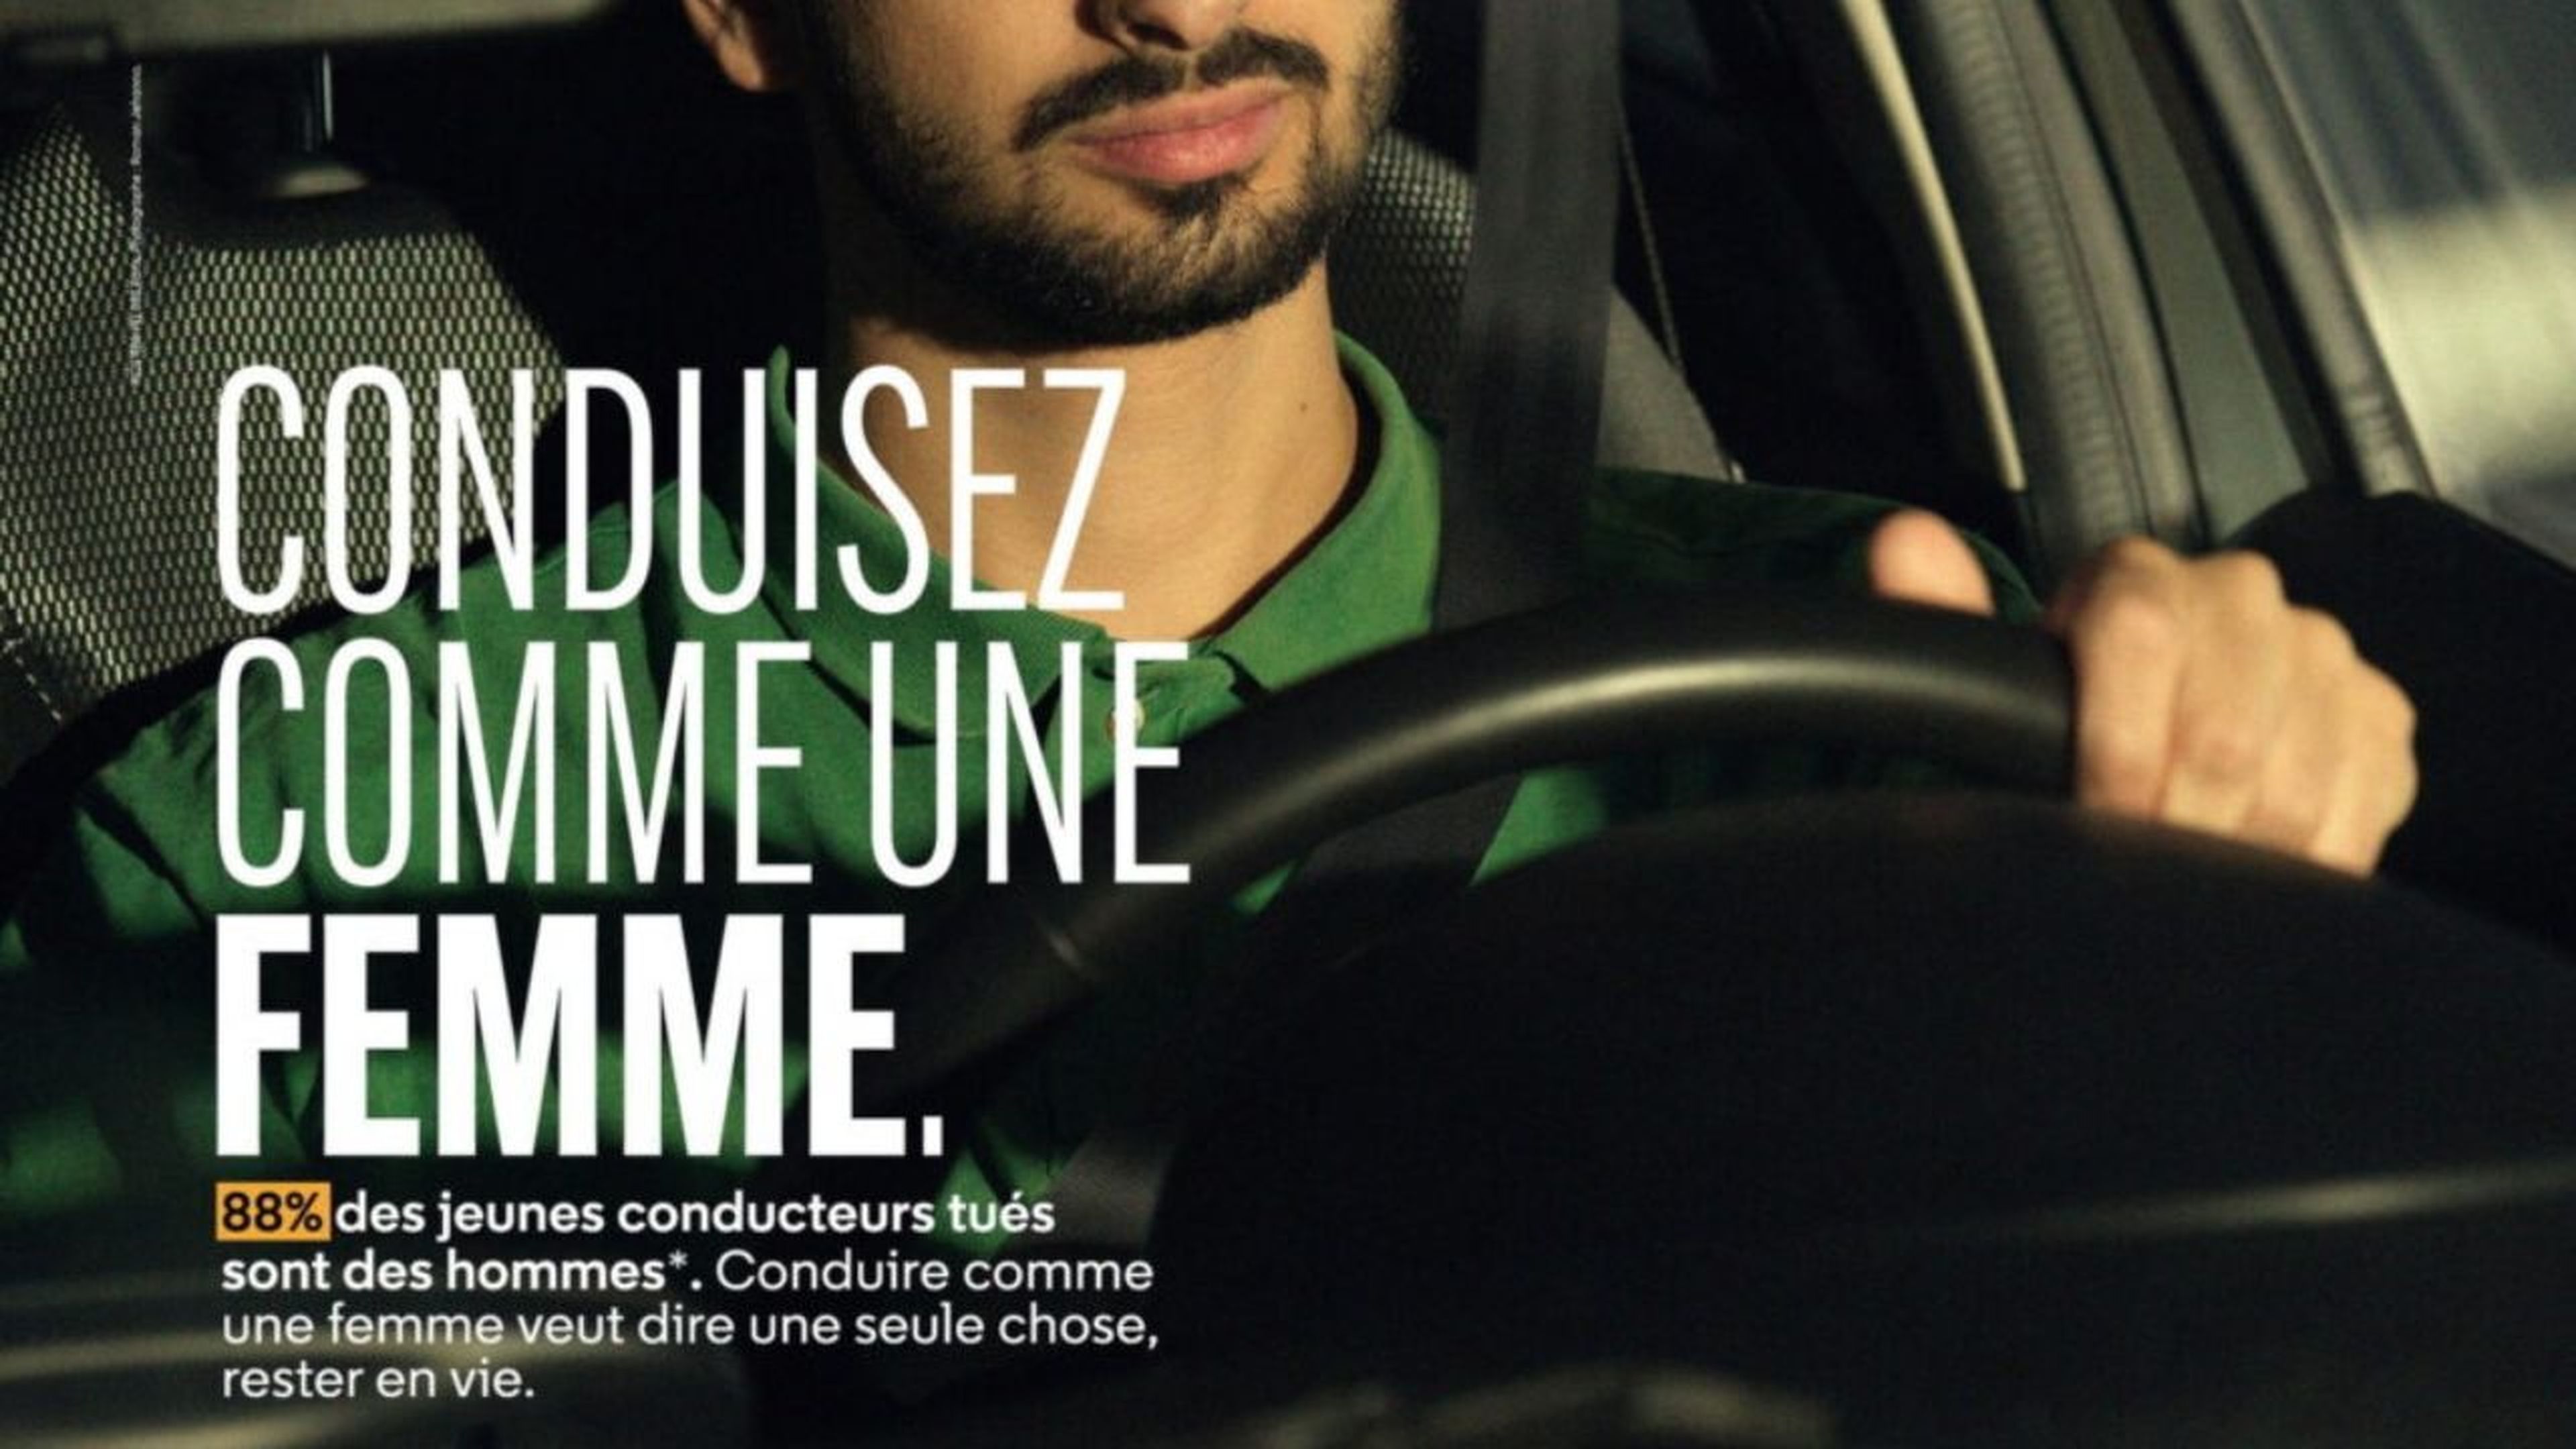 Campaña "conducir como una mujer" Francia